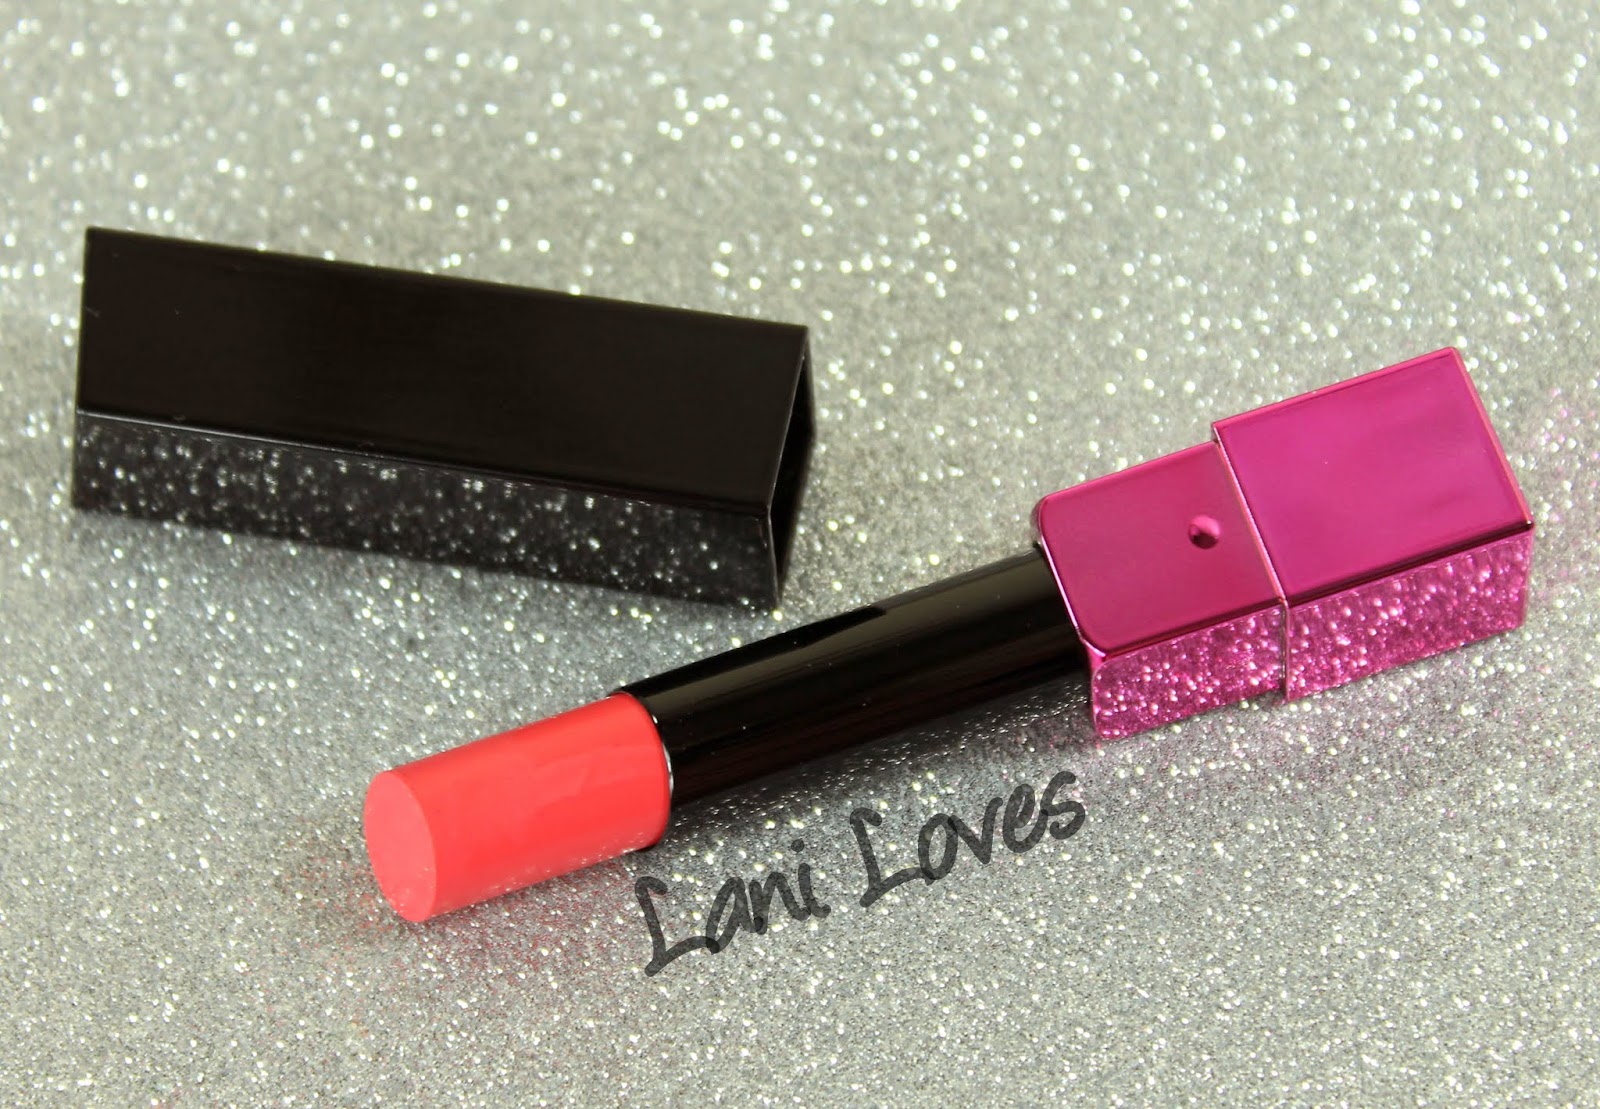 ZA Vibrant Moist Lipstick - PK444 swatches & review